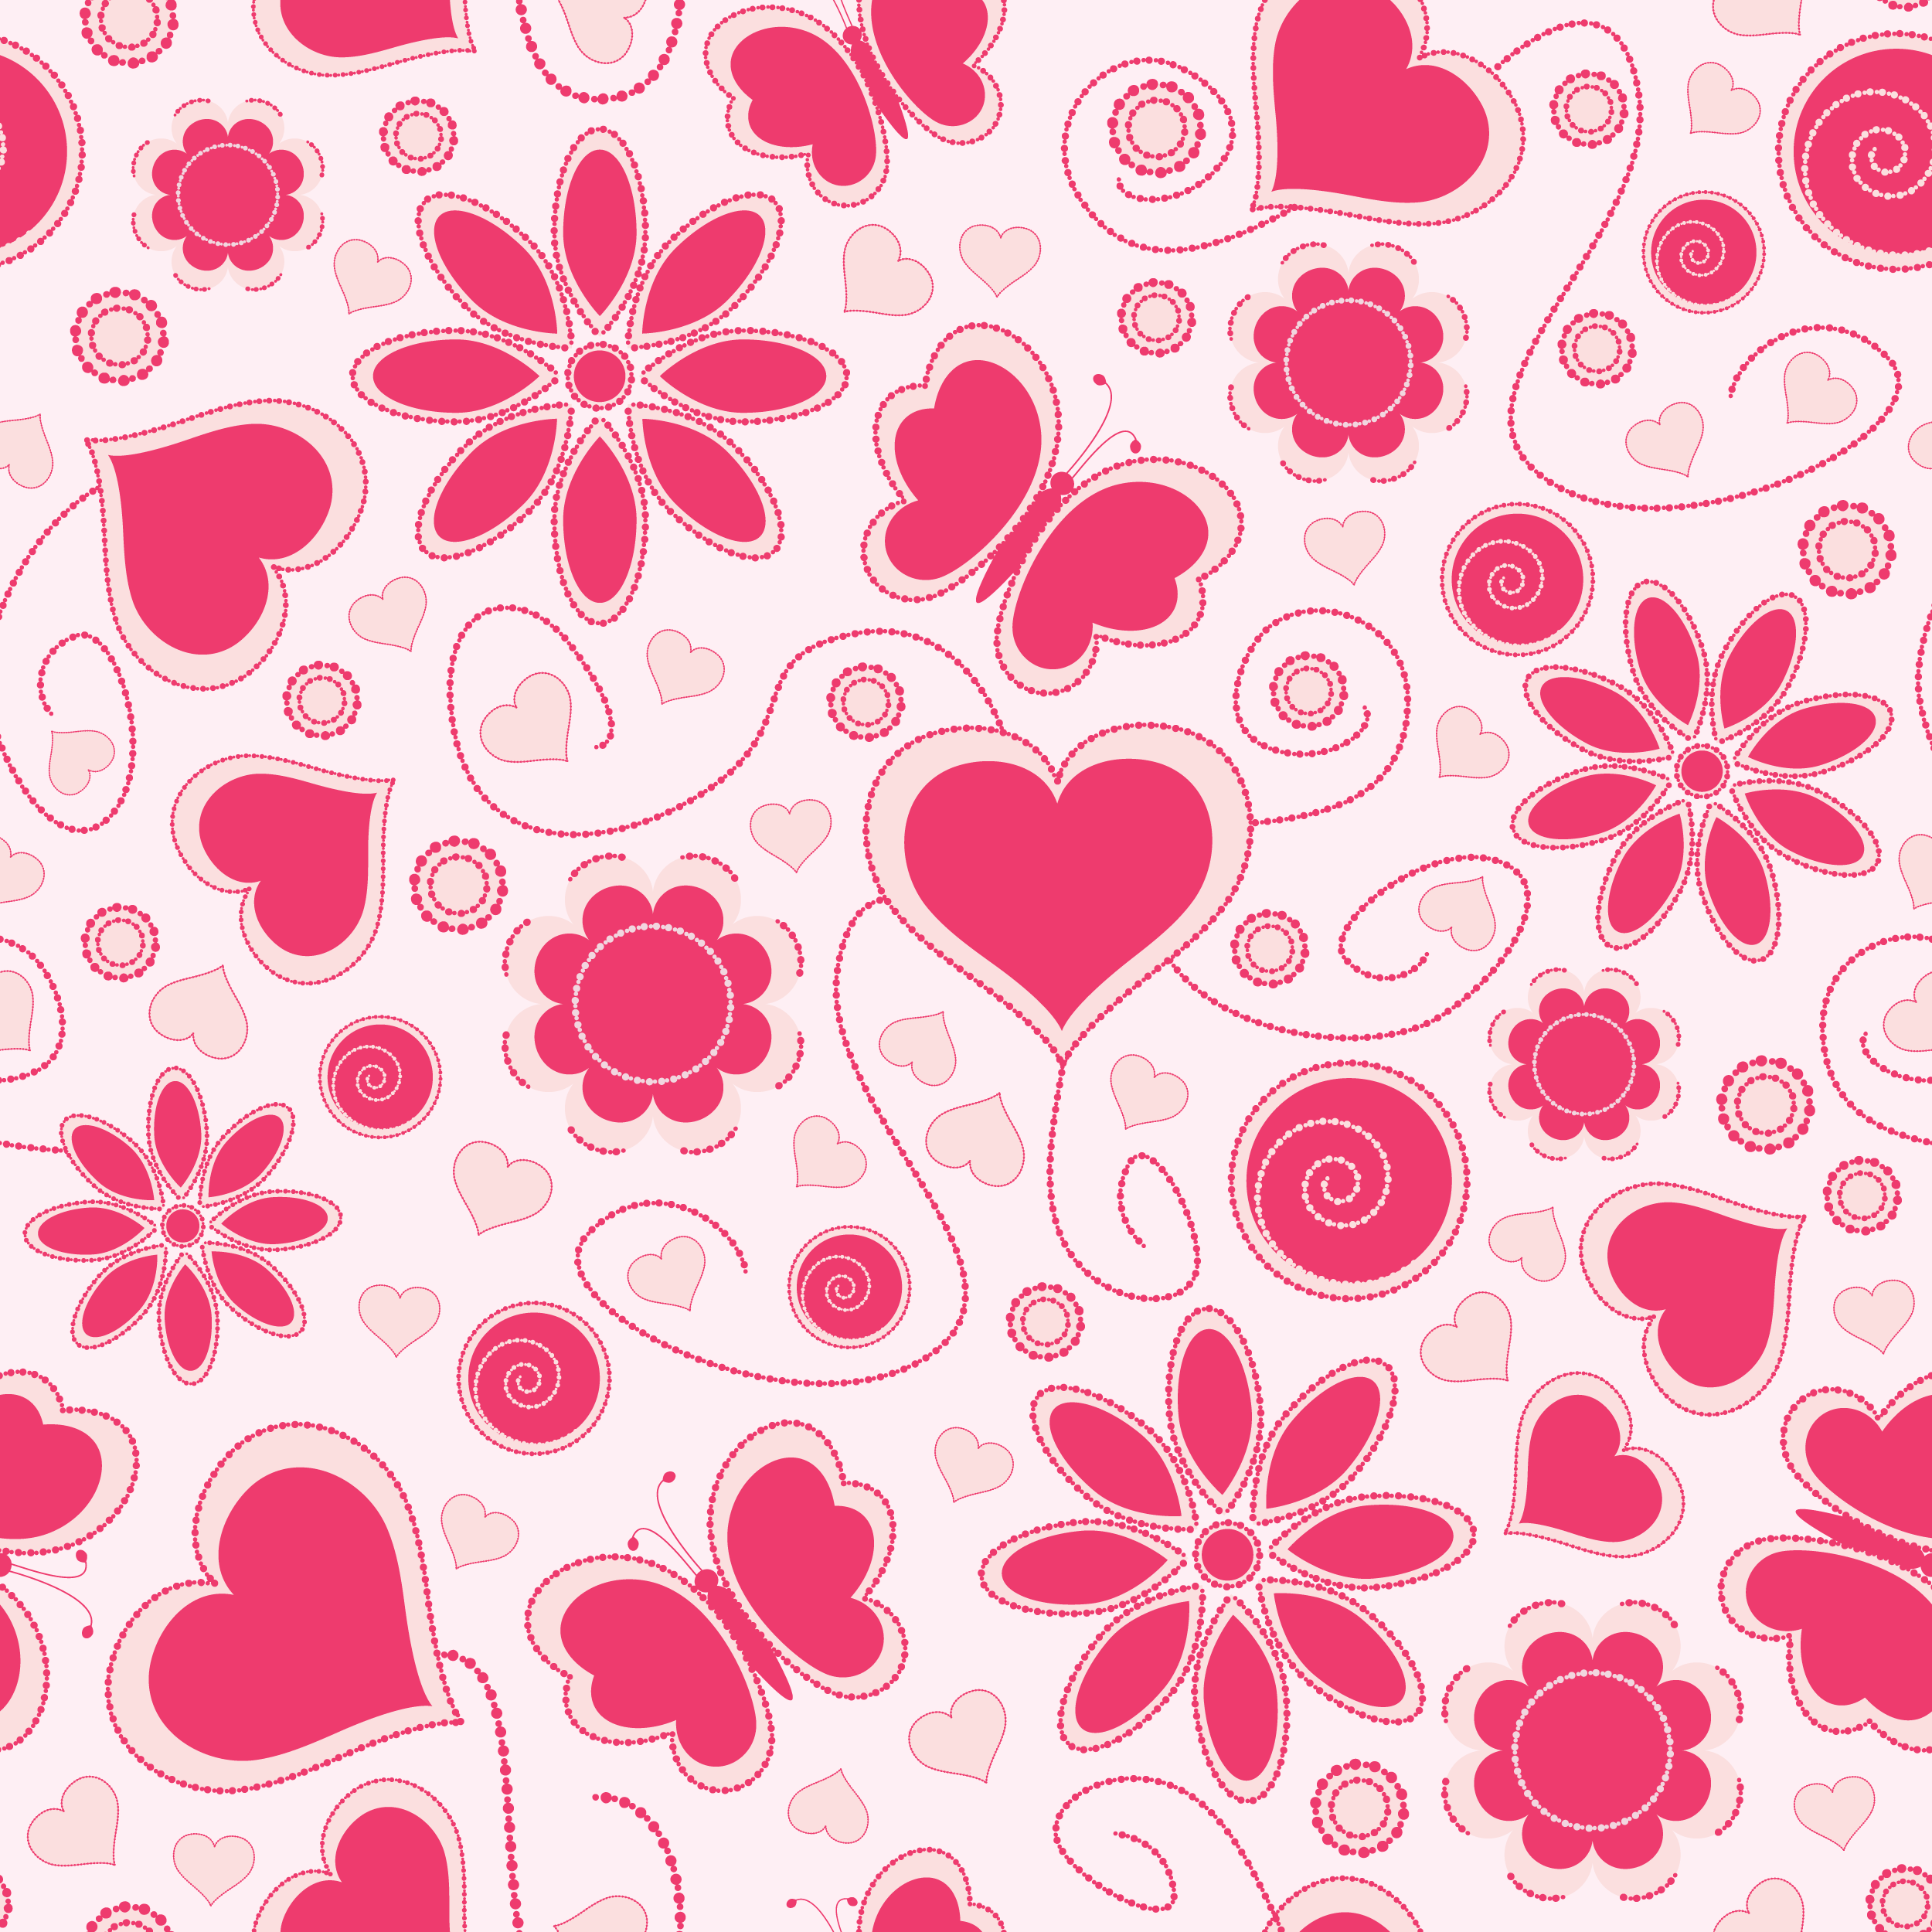 ハートデザインの壁紙 背景素材 無料画像no 001 ピンク 蝶とハート